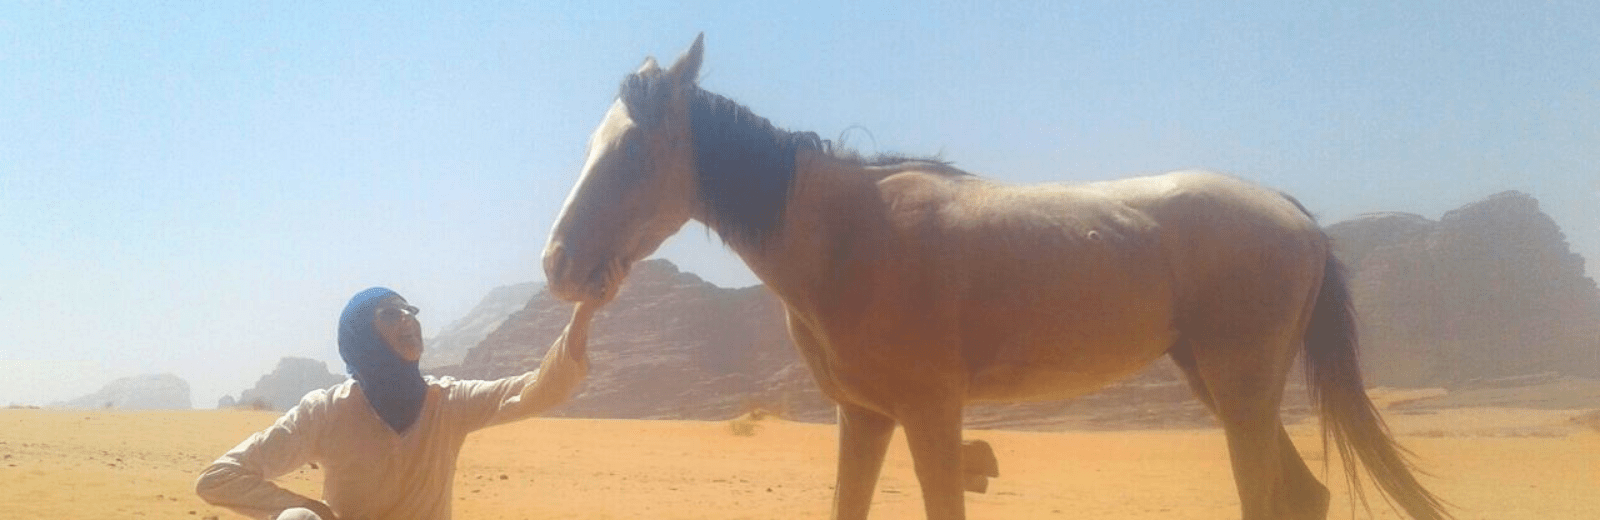 Retraite met paarden in de Wadi Rum. Jordan Desert Journeys